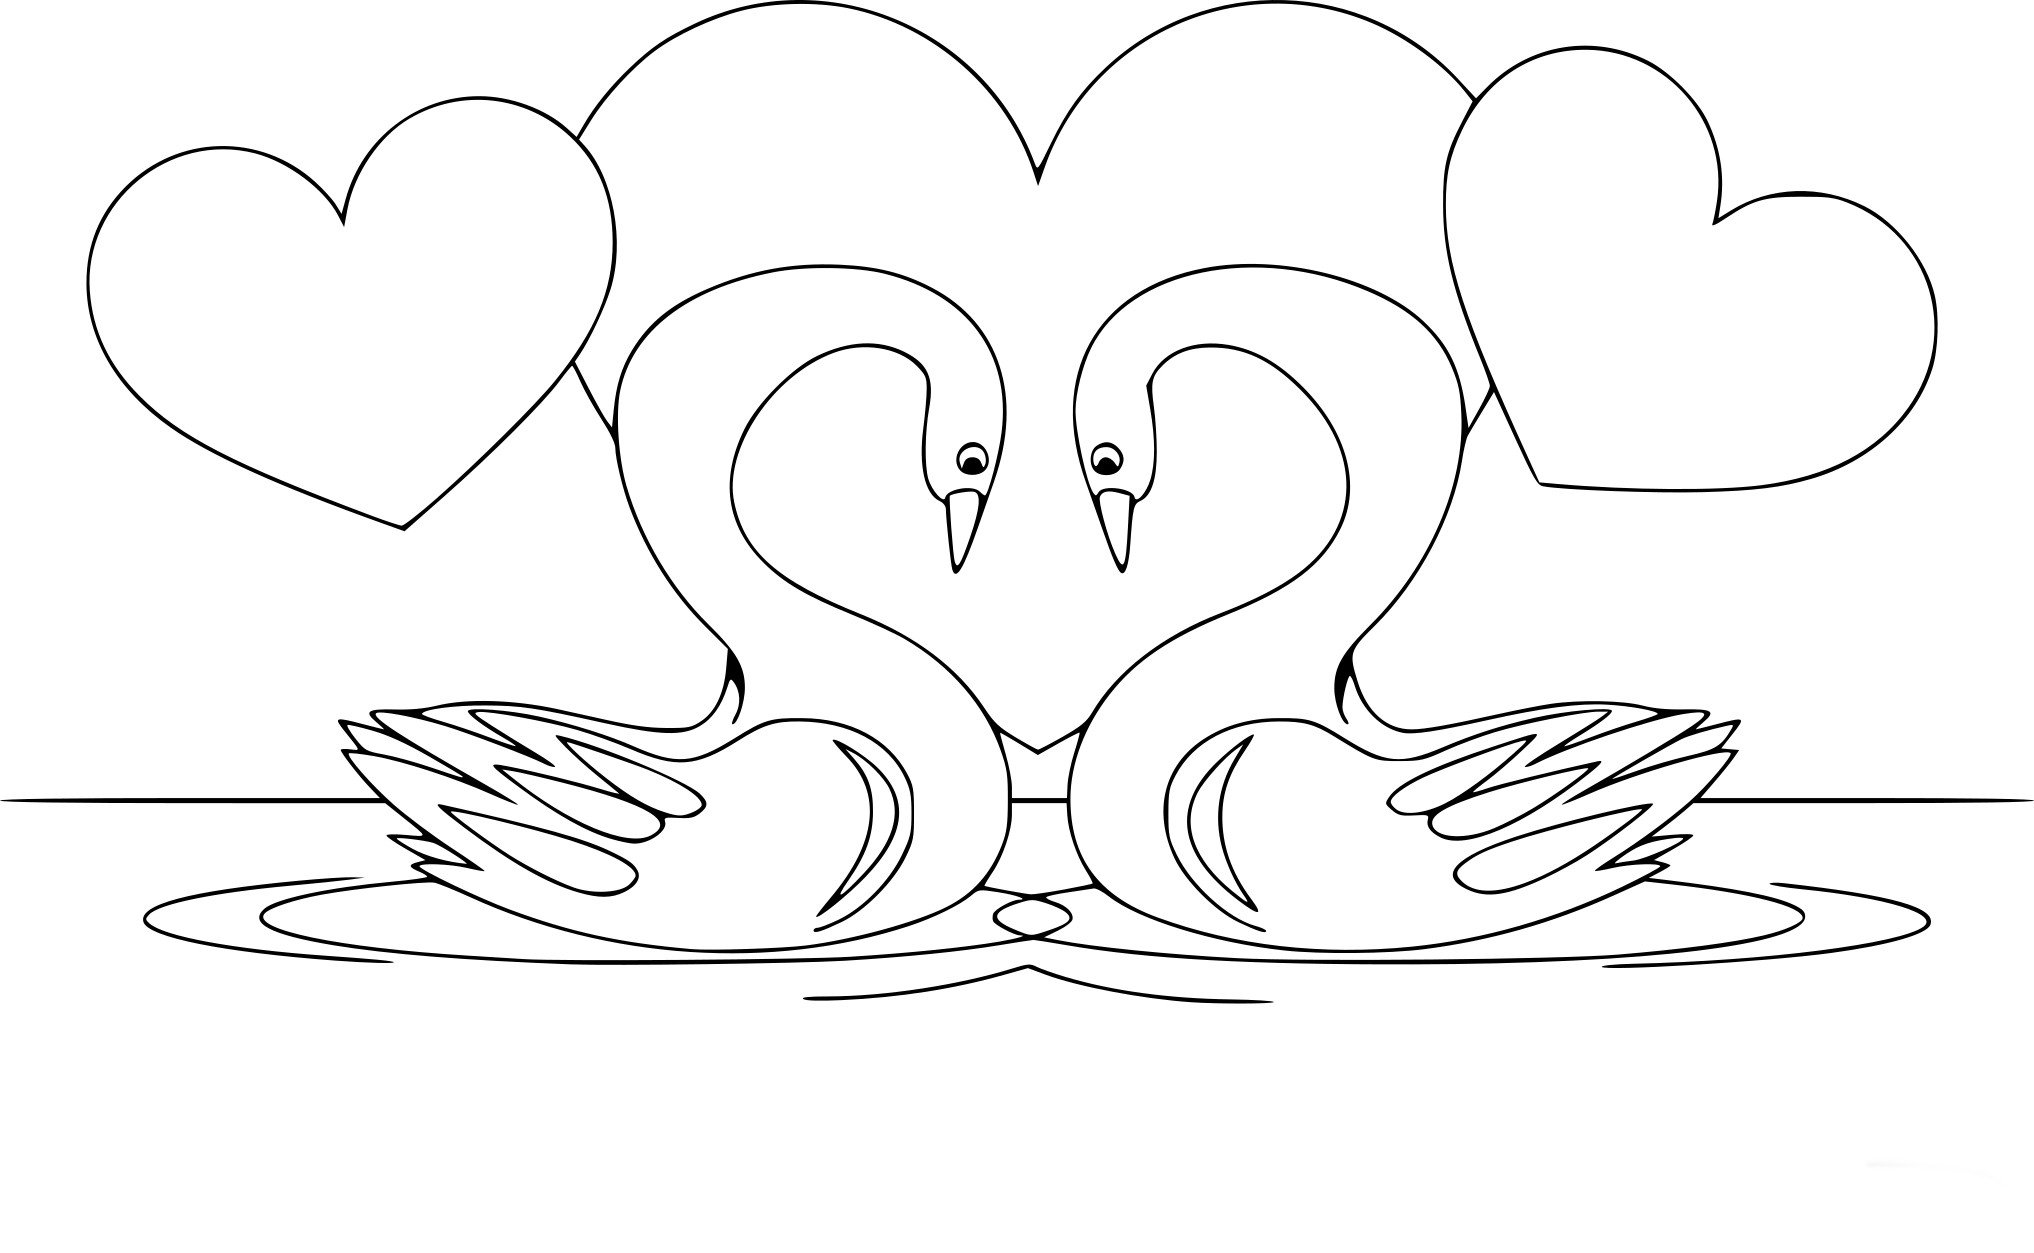 Распечатать картинку лебедь. Лебедь раскраска. Лебедь раскраска для детей. Лебедь рисунок раскраска. Рисунок на годовщину свадьбы родителям.